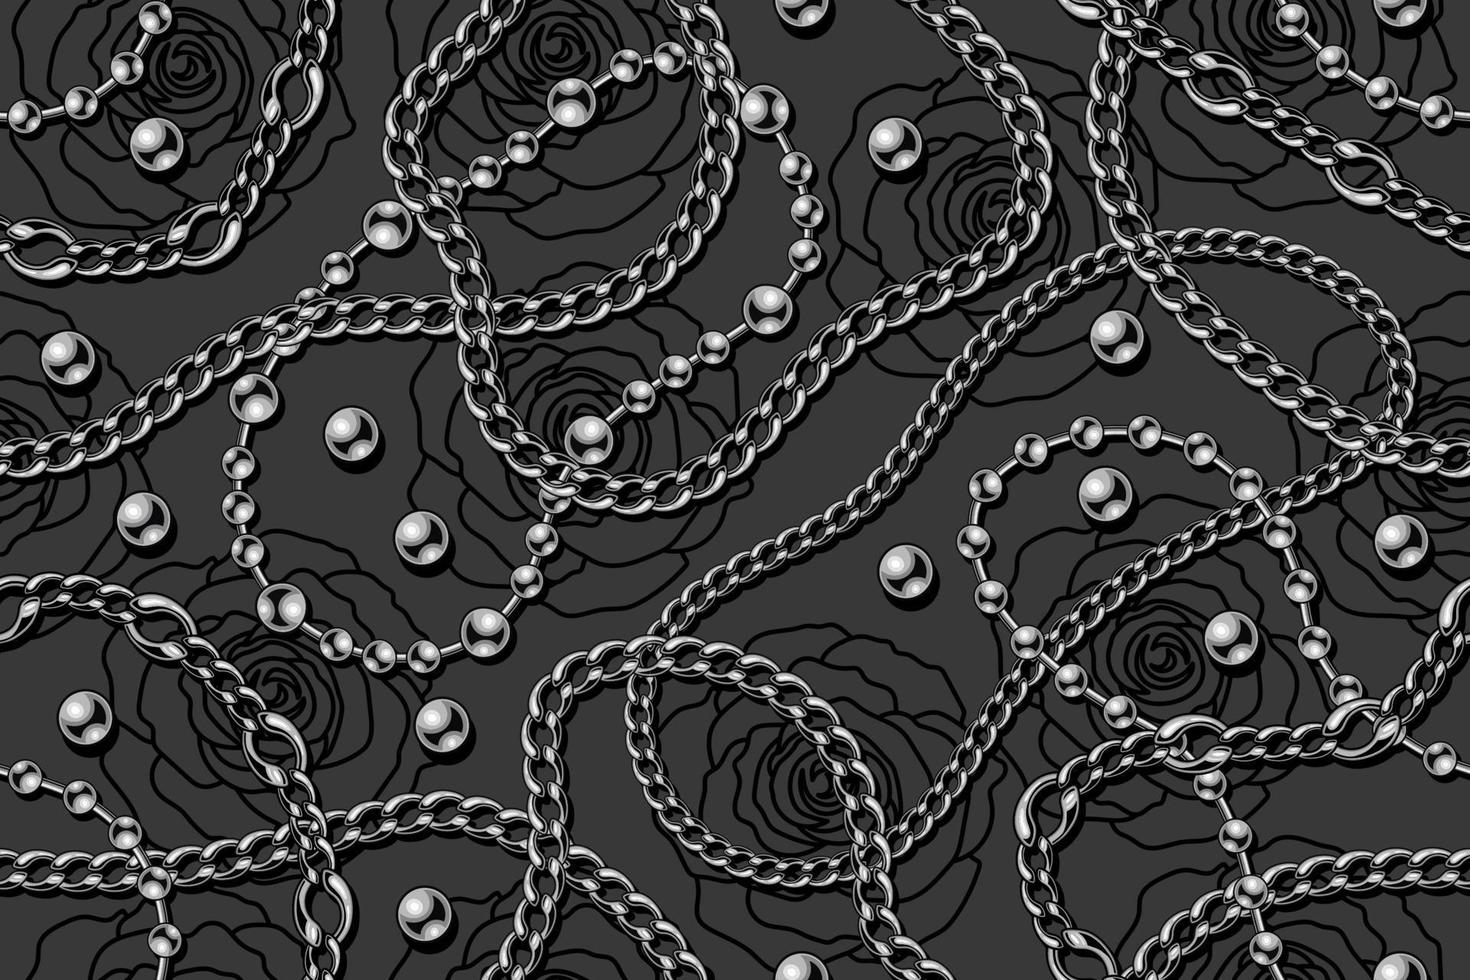 motif gris harmonieux avec perles argentées, chaînes de perles métalliques, chaînes en acier inoxydable, roses noires linéaires sur fond sombre. illustration vectorielle vecteur